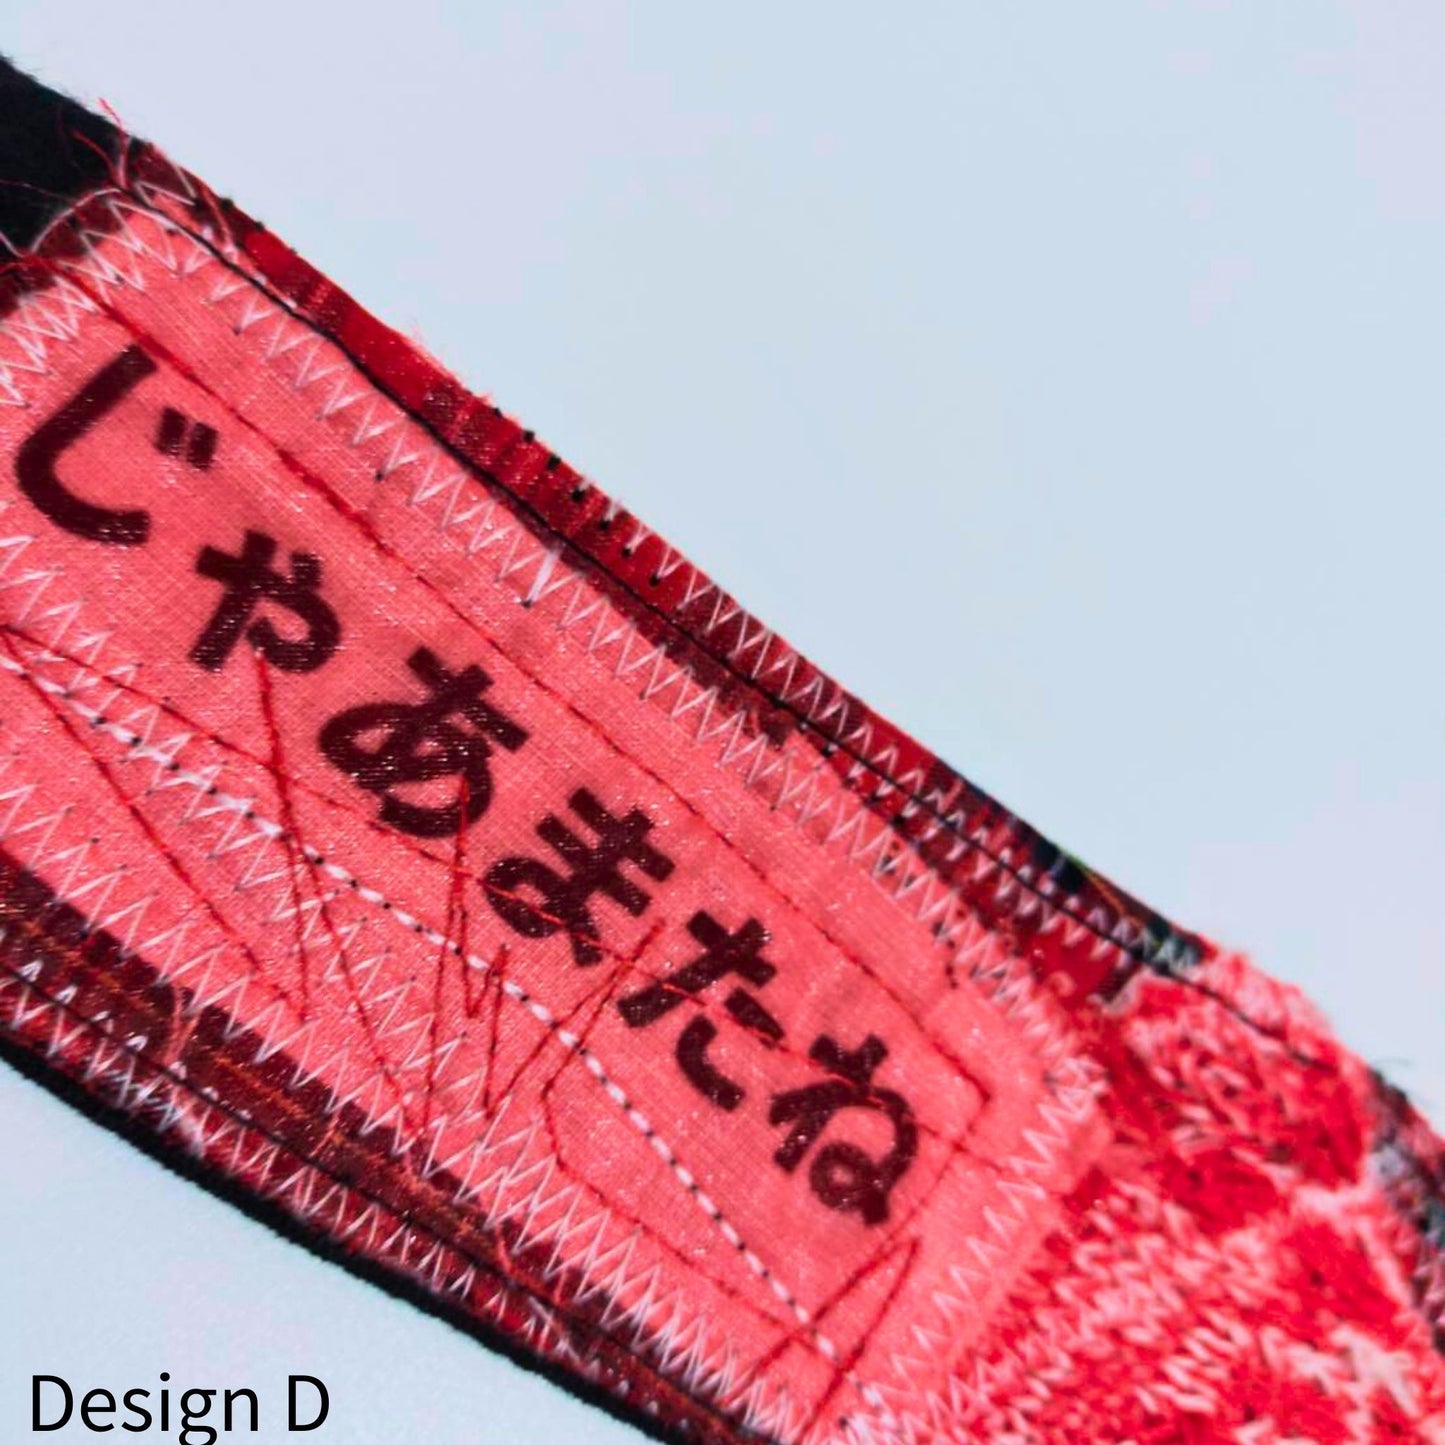 Japanese writings Knit x Wool Wristband